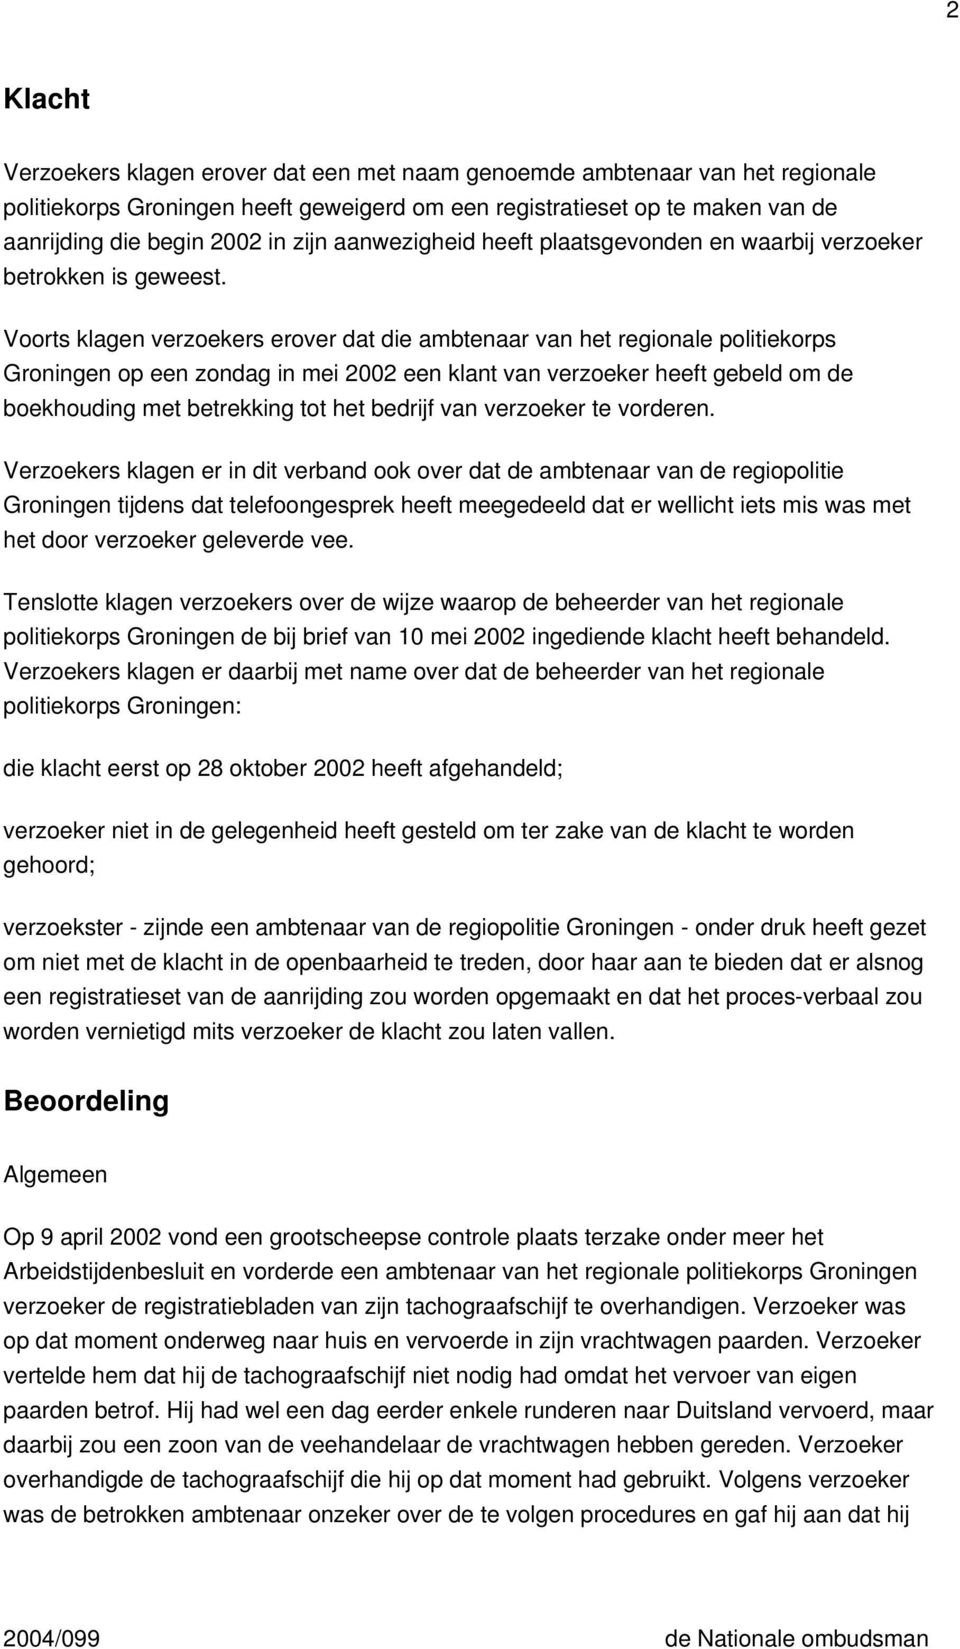 Voorts klagen verzoekers erover dat die ambtenaar van het regionale politiekorps Groningen op een zondag in mei 2002 een klant van verzoeker heeft gebeld om de boekhouding met betrekking tot het